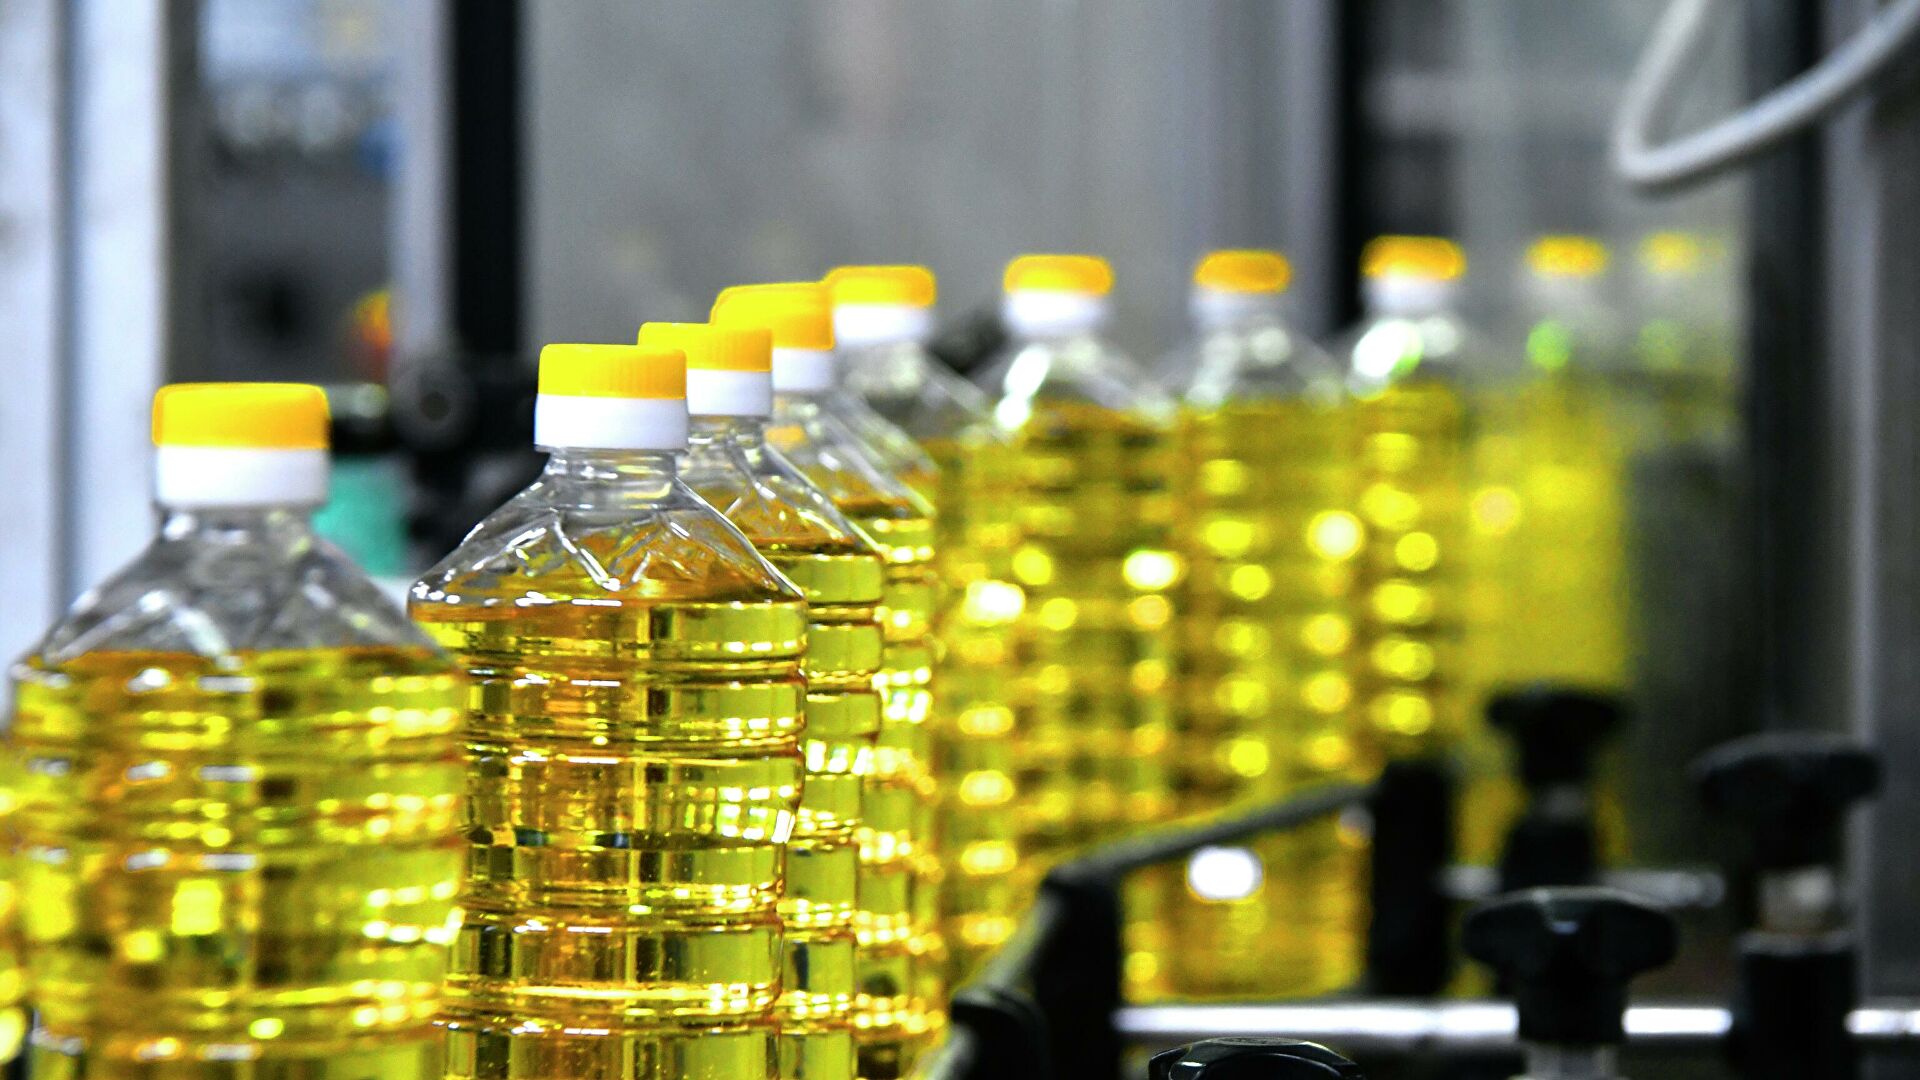 Антимонопольный комитет объяснился за подскочившие цены на растительное масло